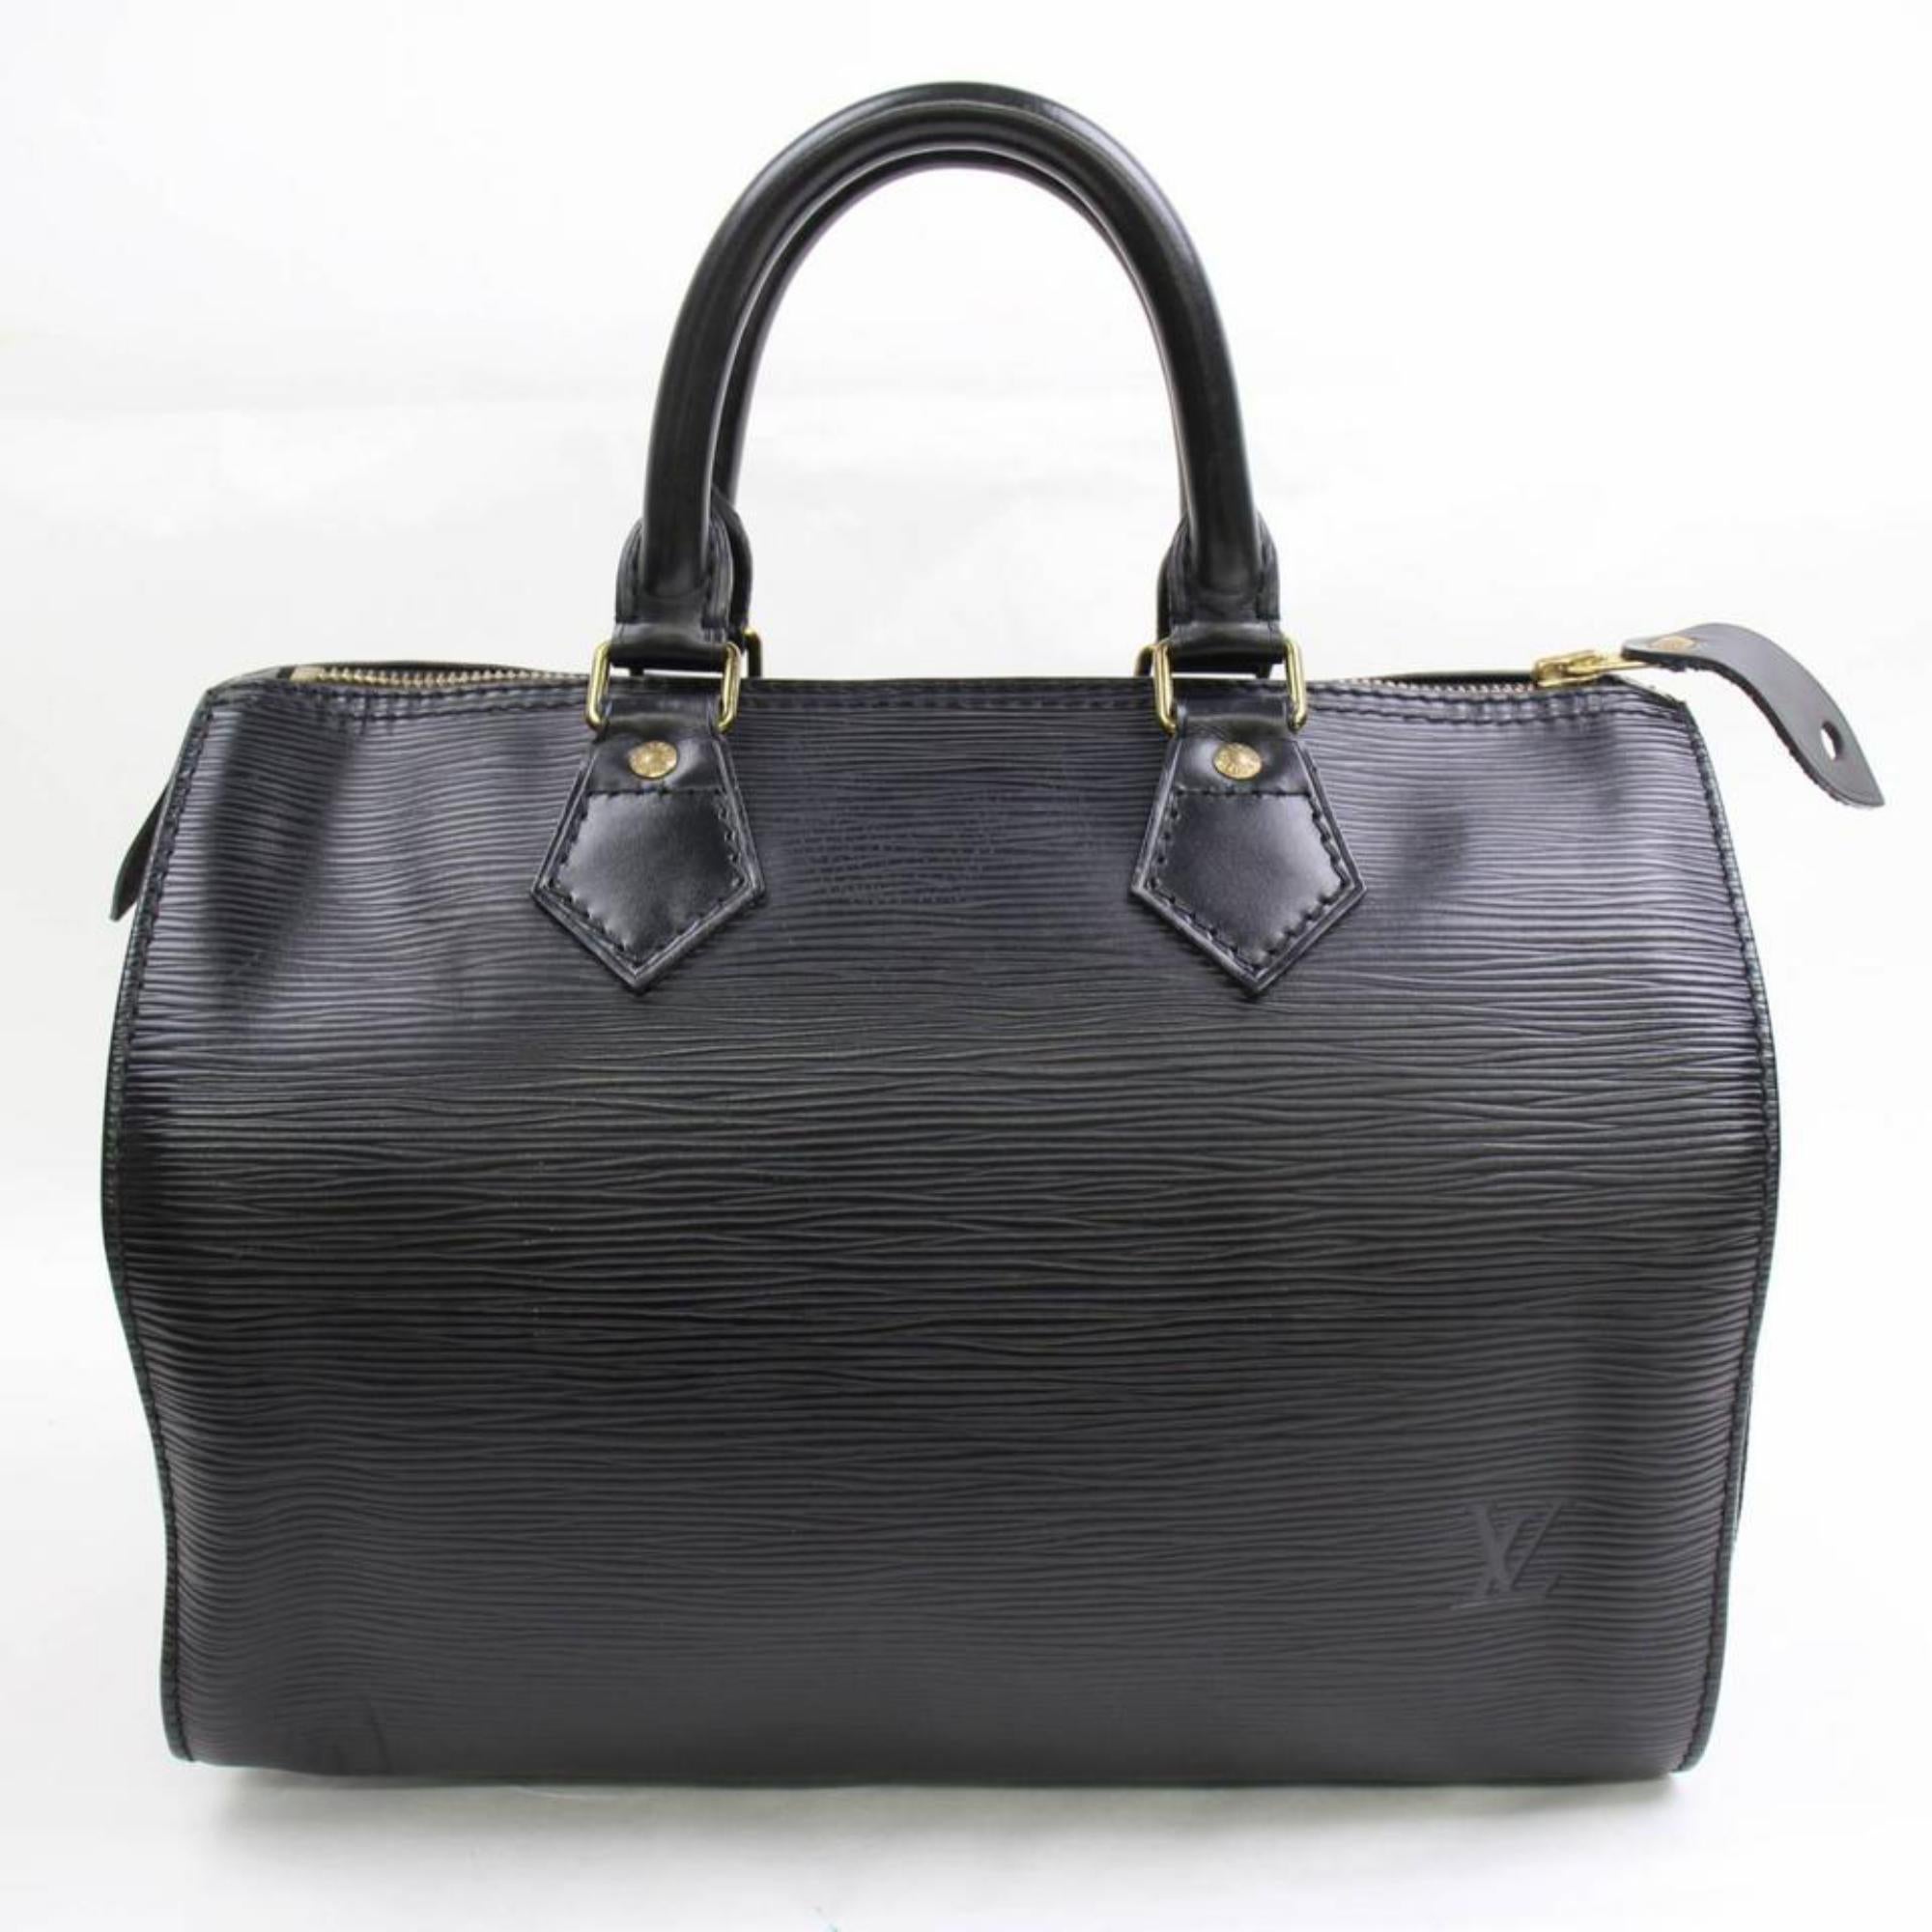 Louis Vuitton Speedy Noir 25 868360 Black Leather Satchel For Sale 2